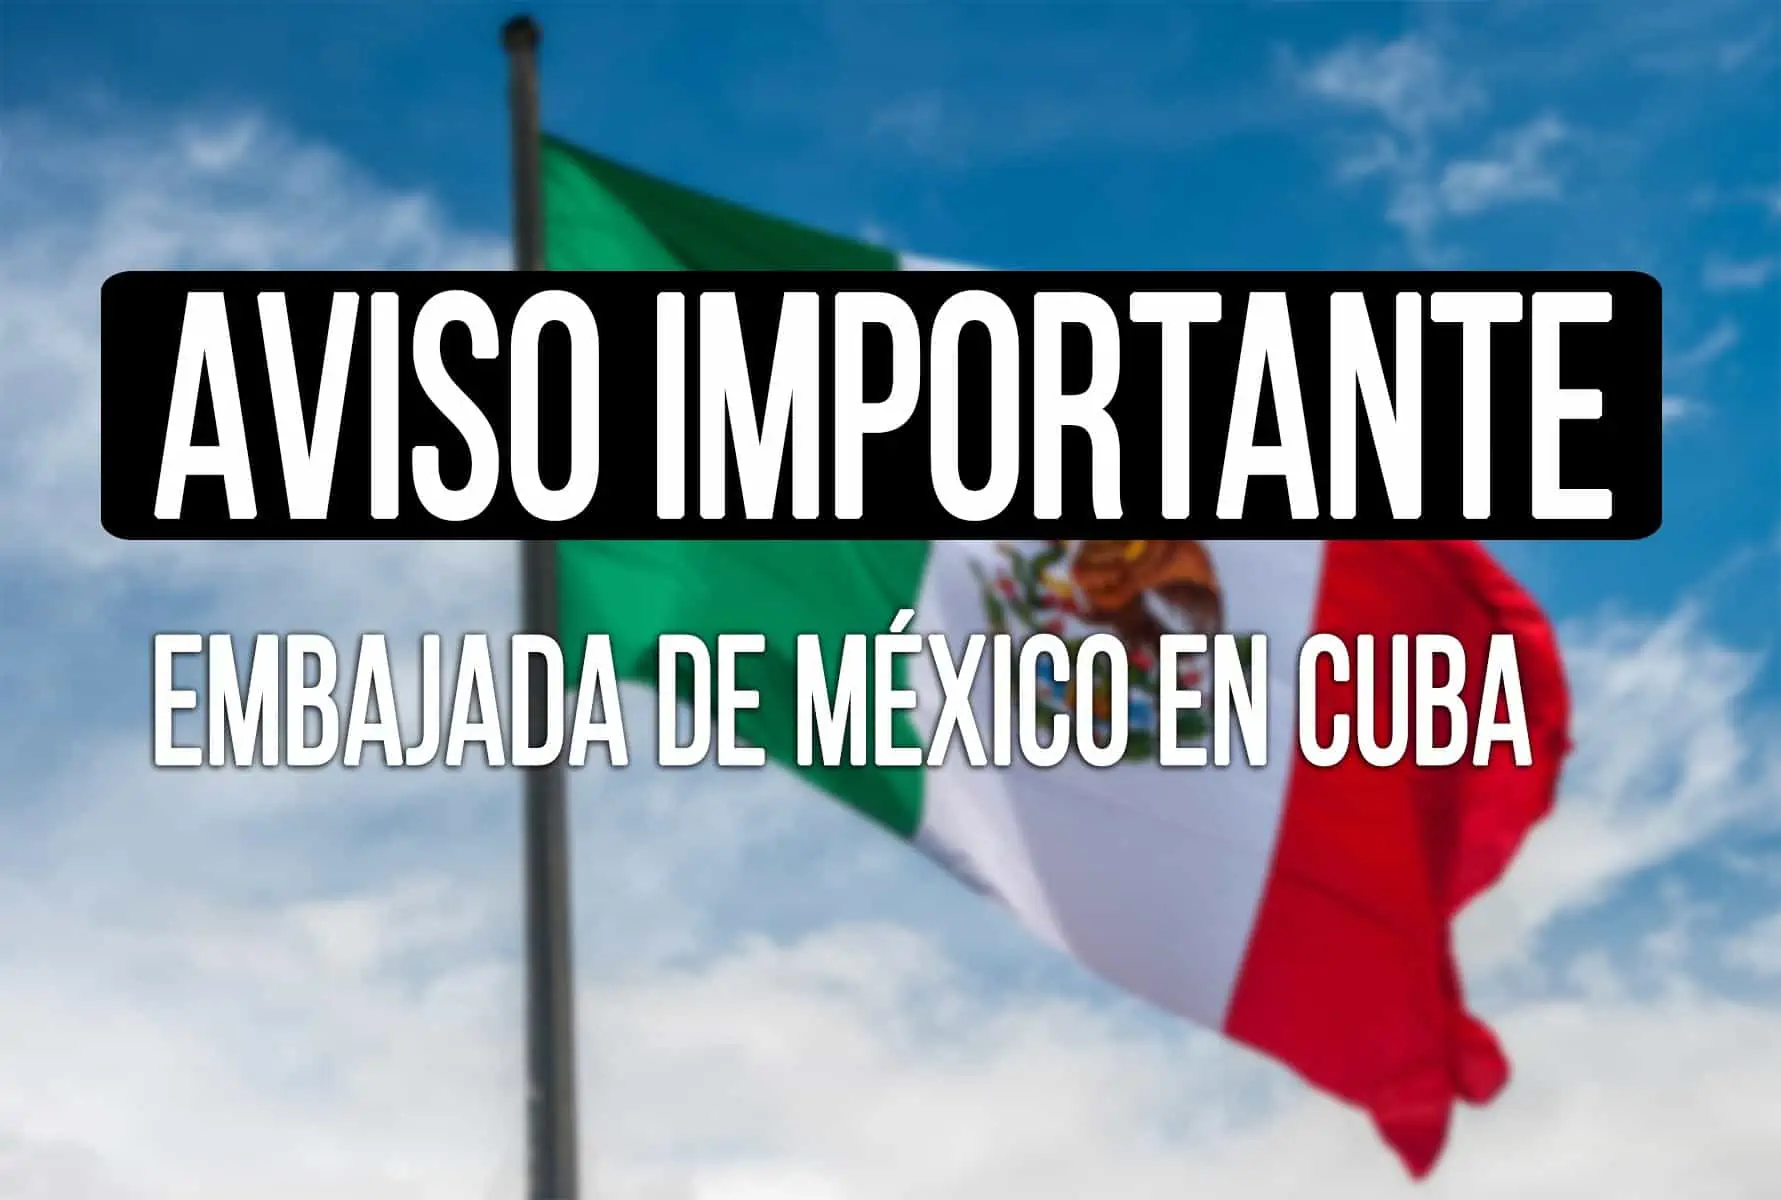 aviso importante citas embajada de mexico en cuba